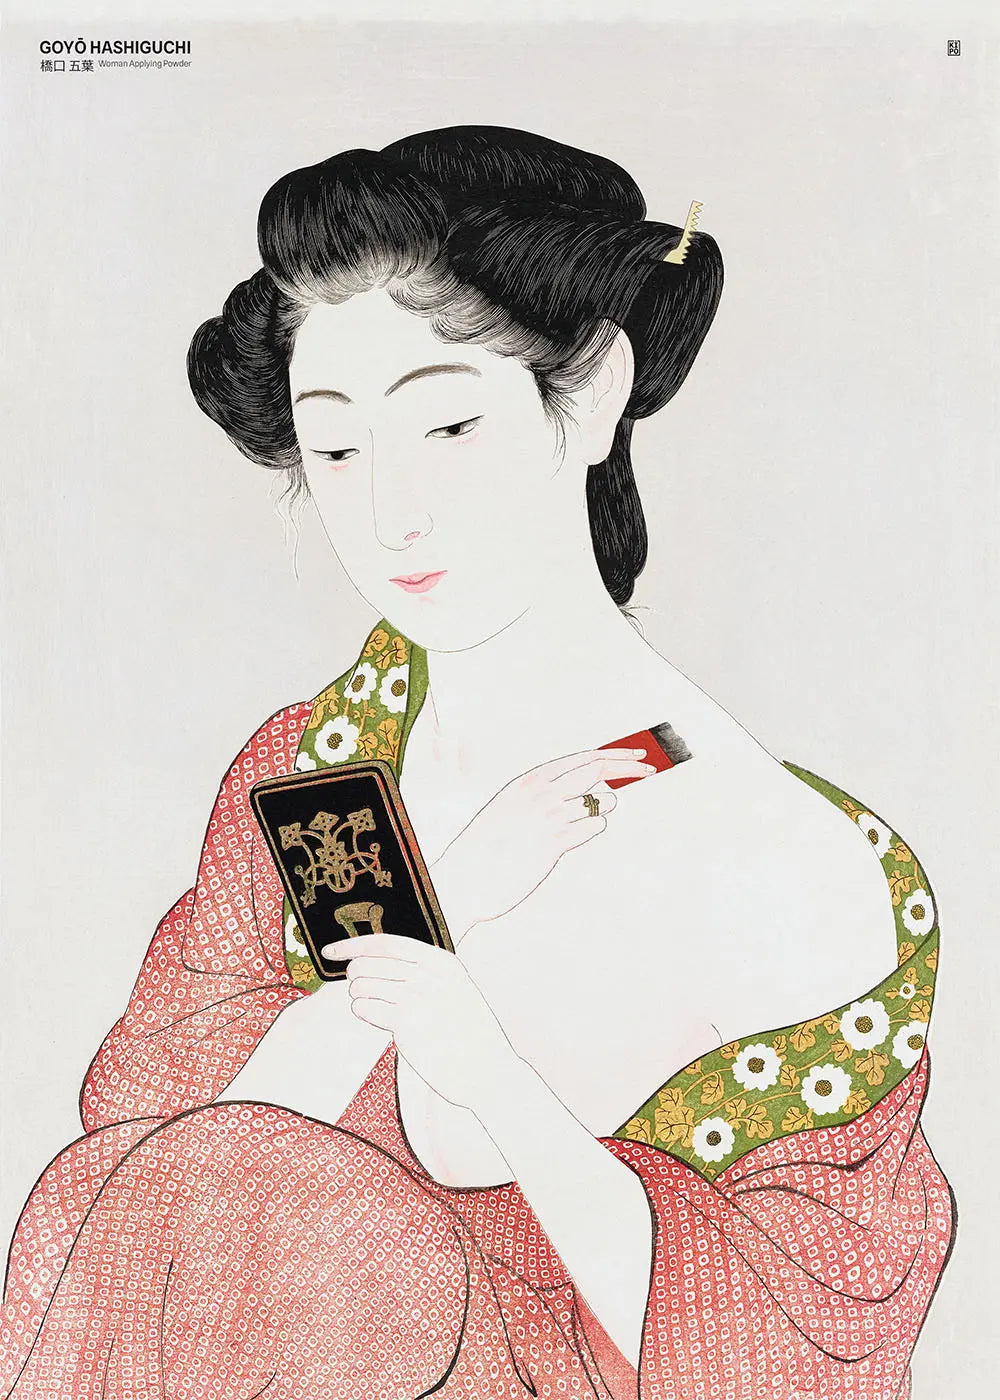 Goyō Hashiguchi - Woman Applying Powder (1918)